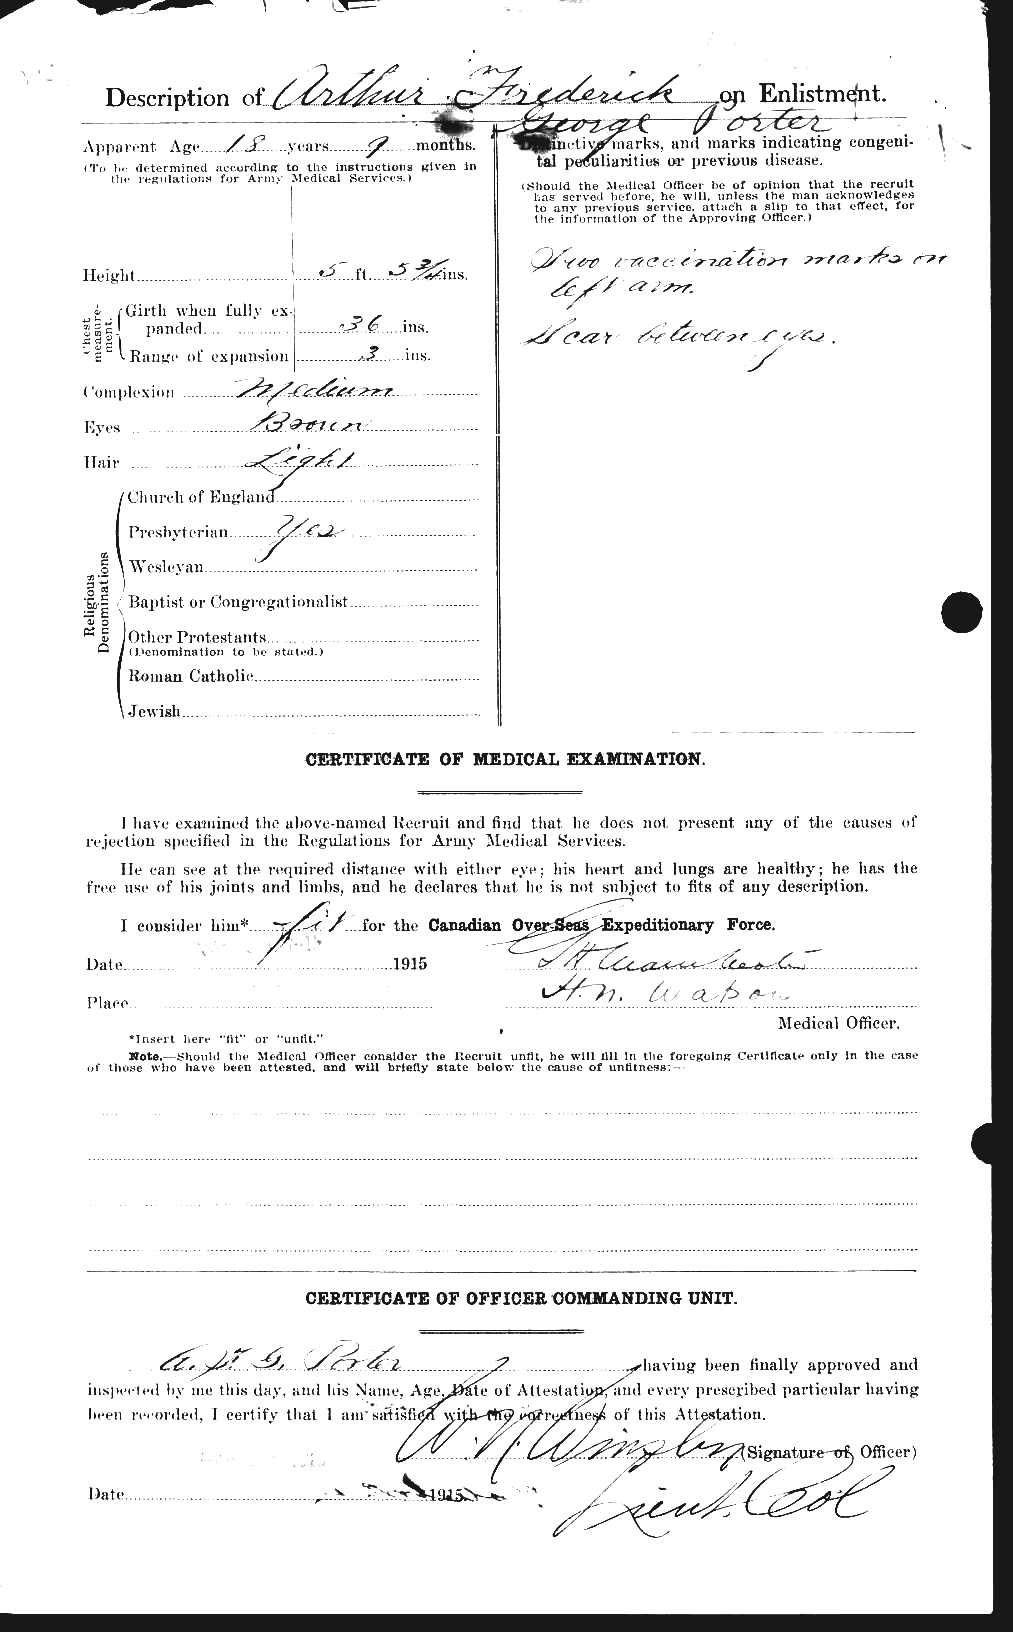 Dossiers du Personnel de la Première Guerre mondiale - CEC 581801b